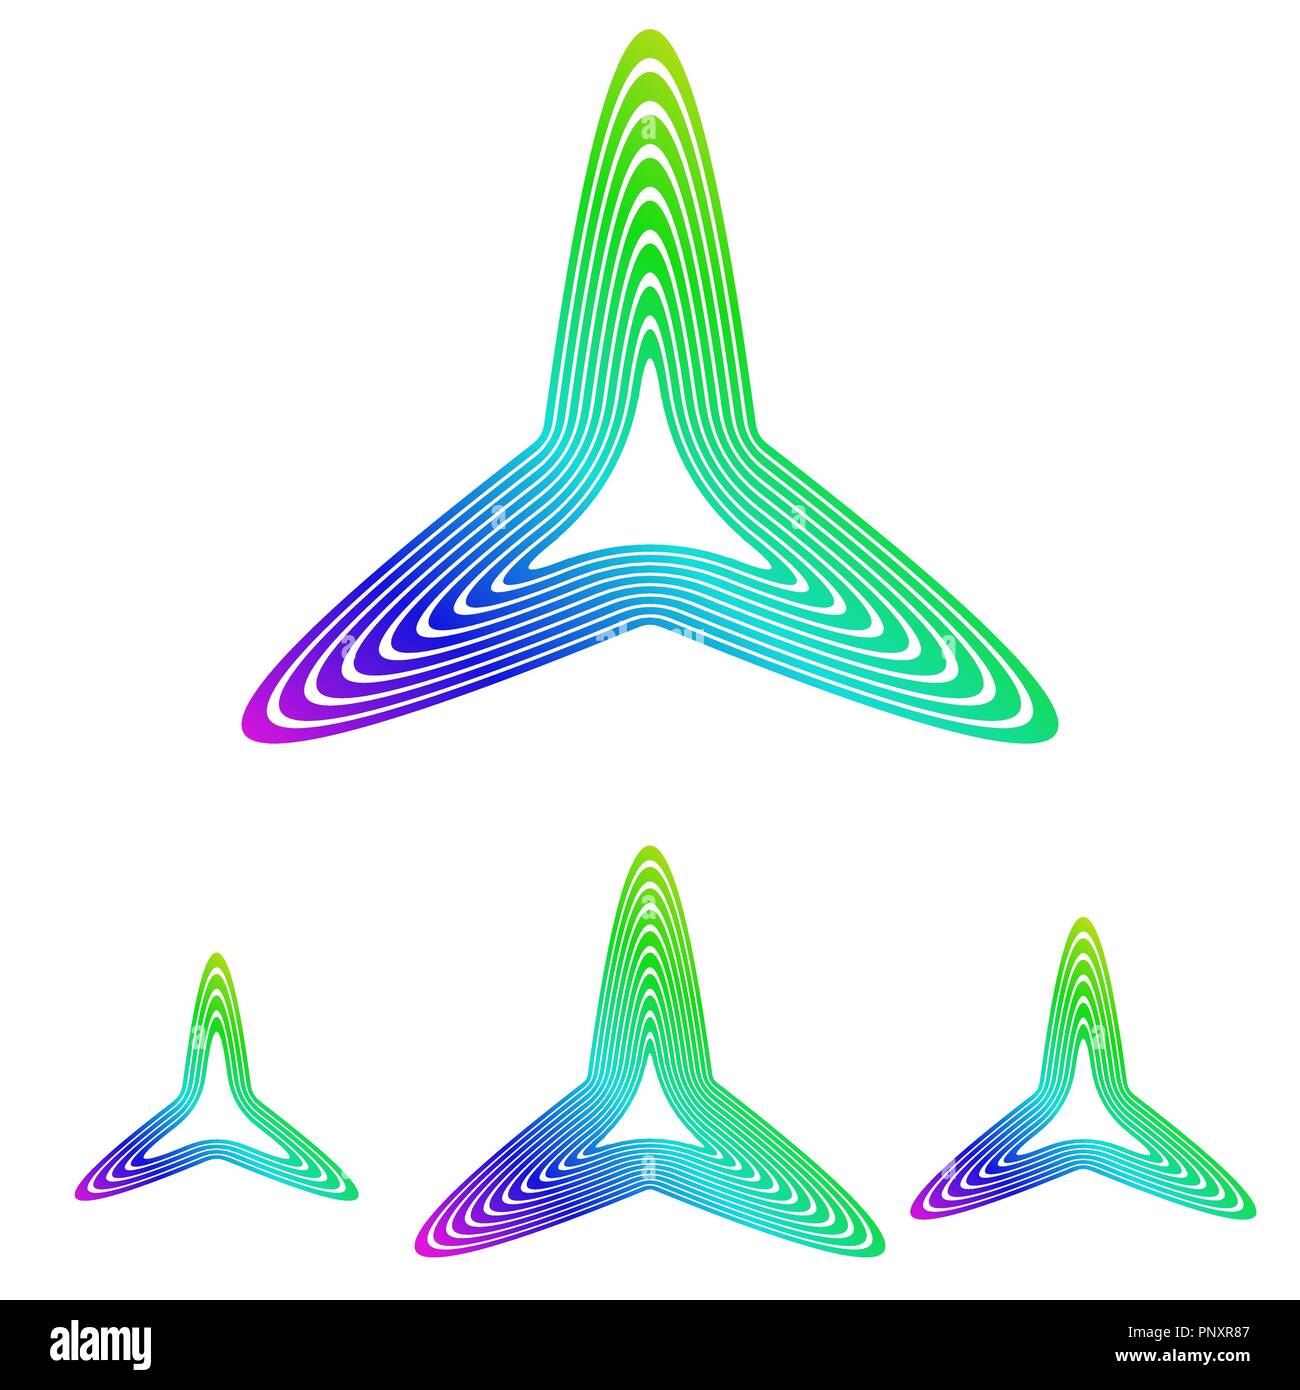 Multicolor line triangle logo design set Stock Vector